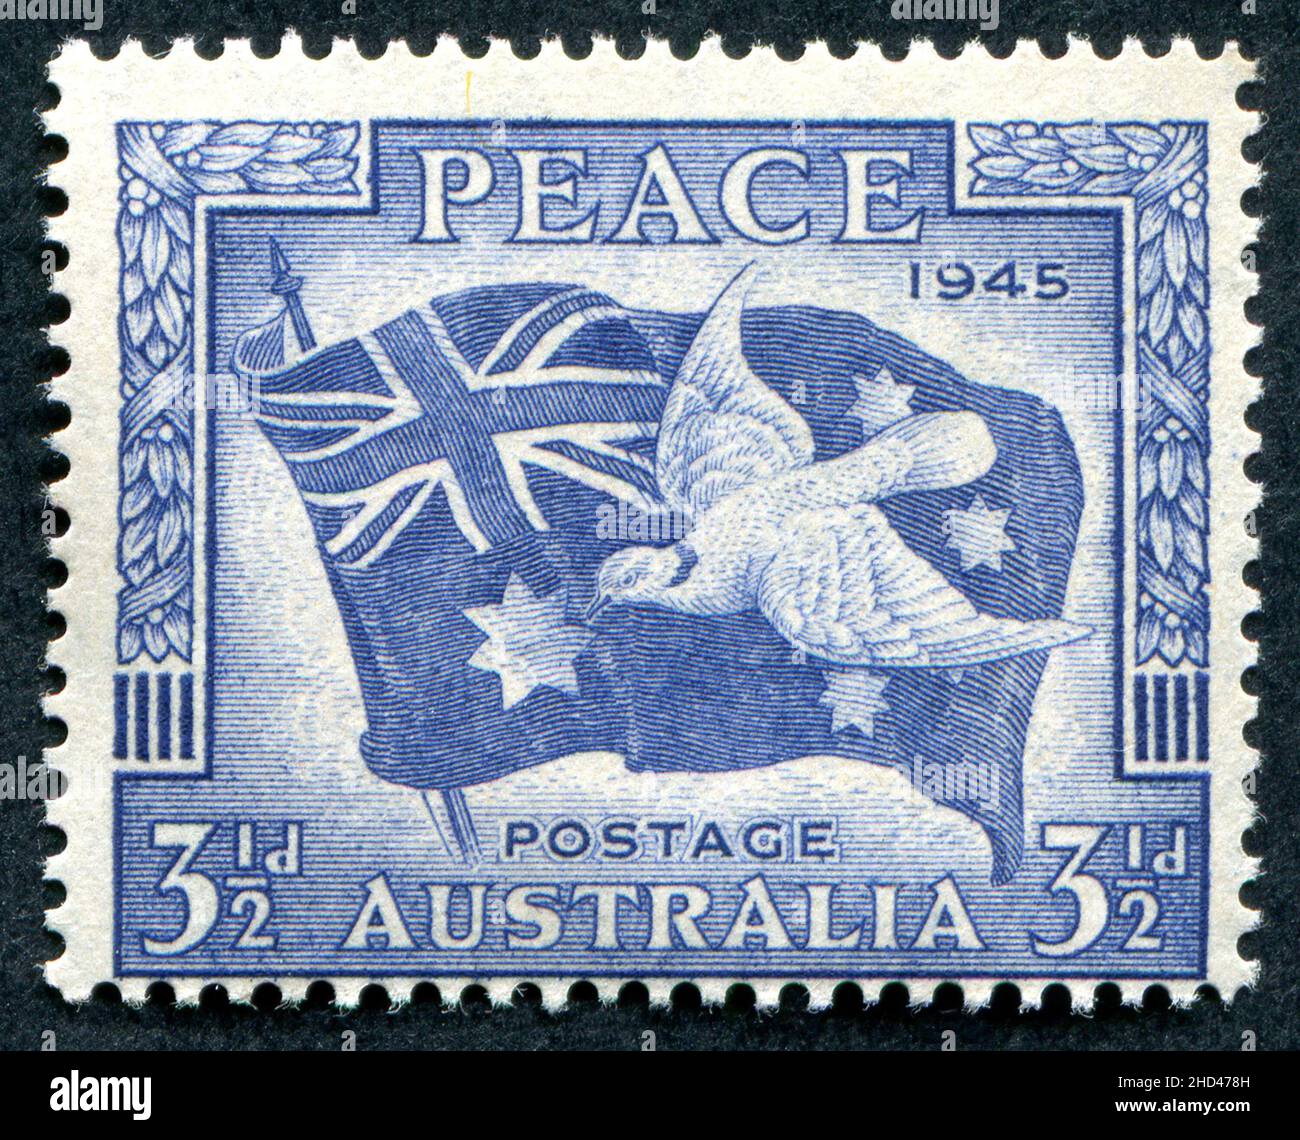 Eine australische Briefmarke aus dem Jahr 1946 mit dem Titel ‘Peace 1945’, Ausgabe 3 1/2D, zum Gedenken an das Ende des Zweiten Weltkriegs. Die Marke wurde von Frank D. Manley und George Lissenden entworfen und von Manley gestochen. Stockfoto